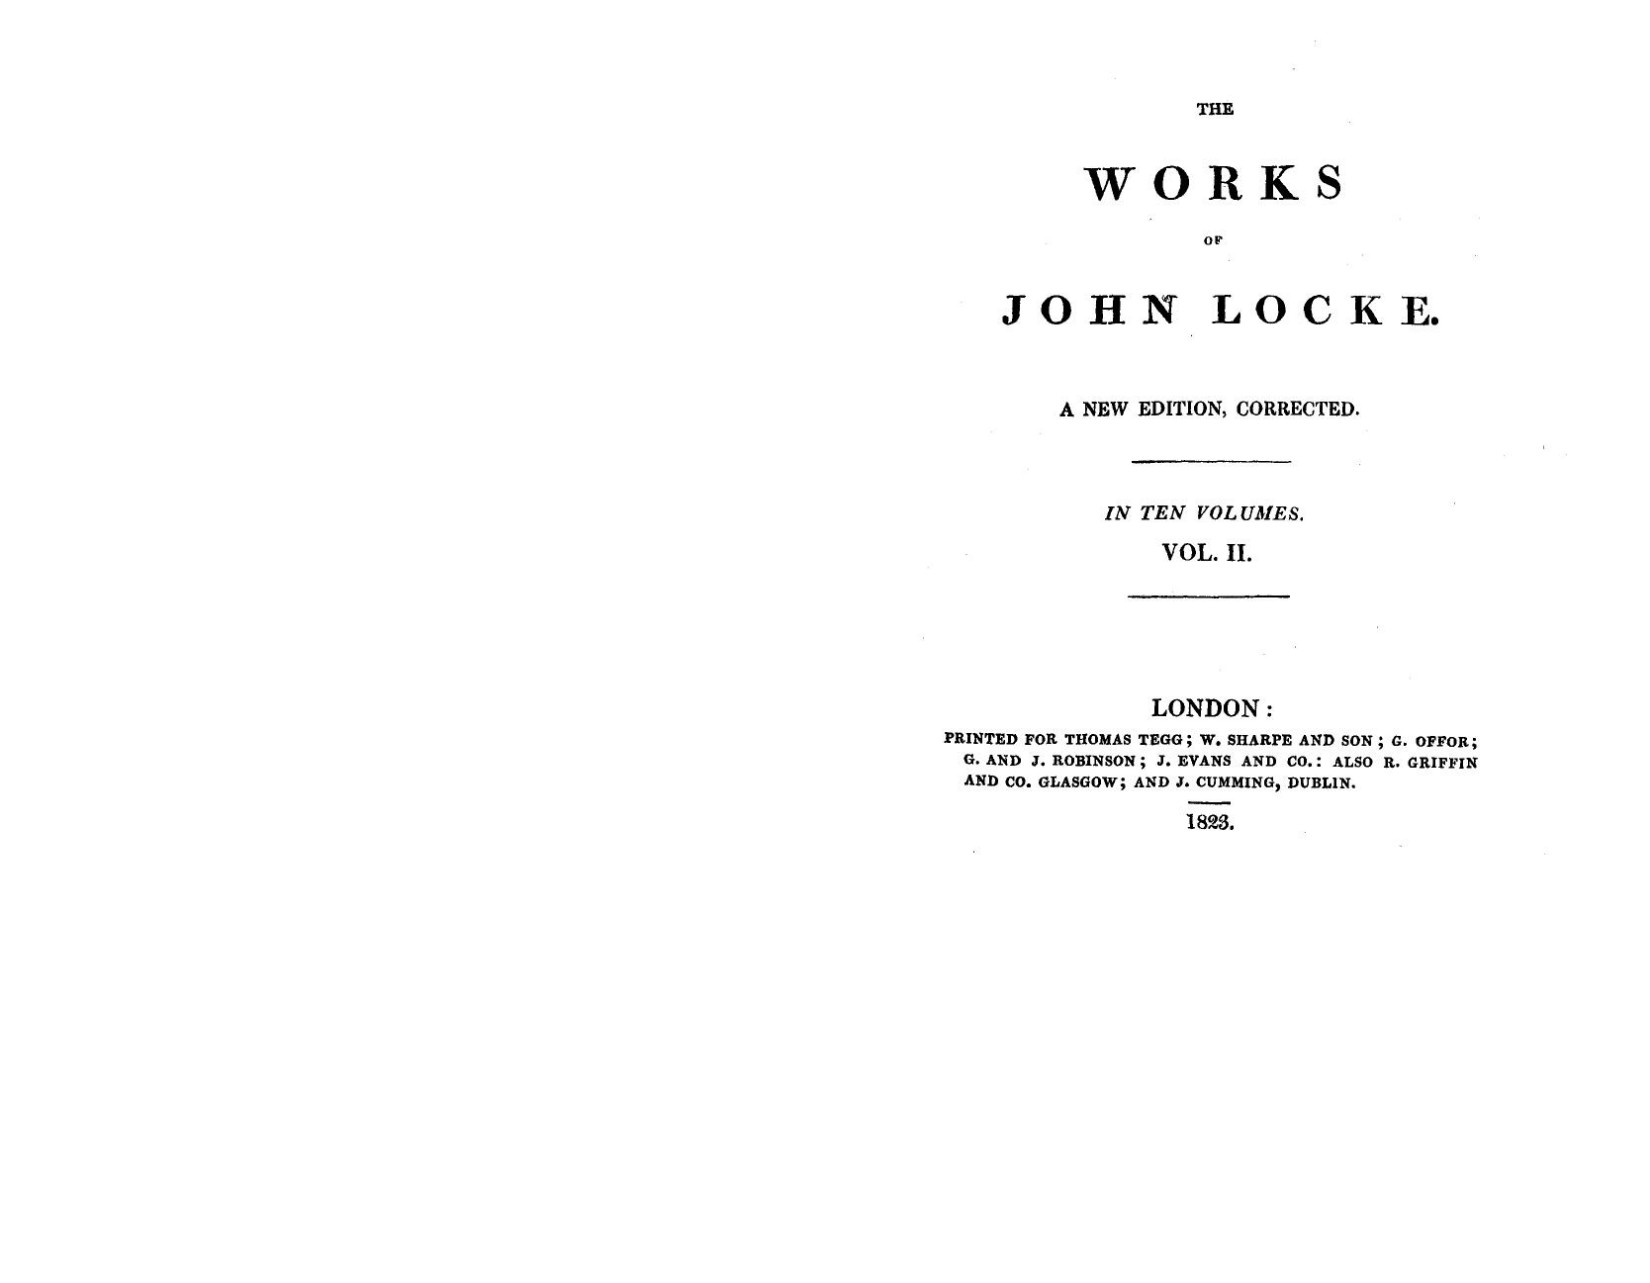 The works of John Locke 02 by John Locke